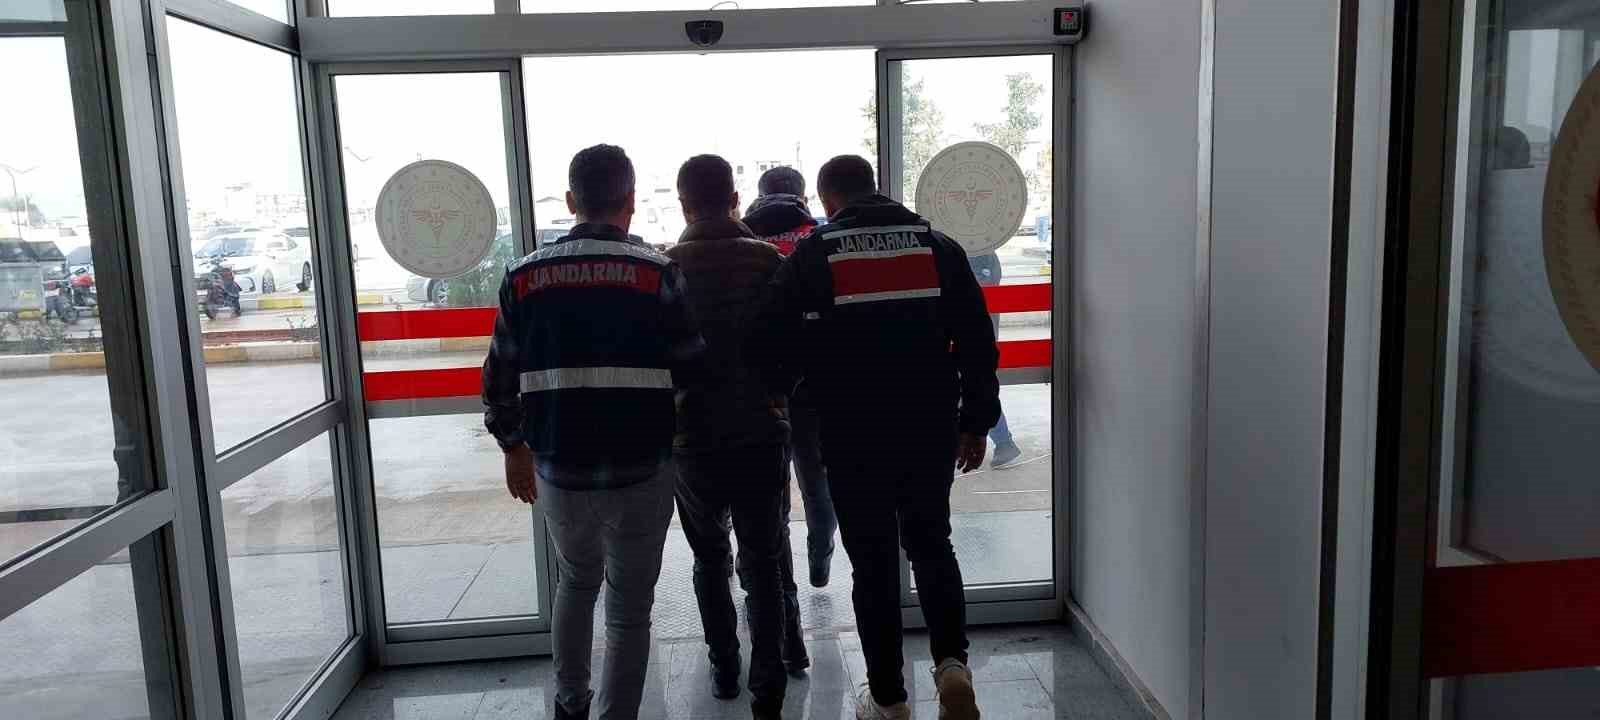 Osmaniye’de Jandarma ekiplerinin gerçekleştirdiği terör operasyonunda 5 kişi tutuklandı.